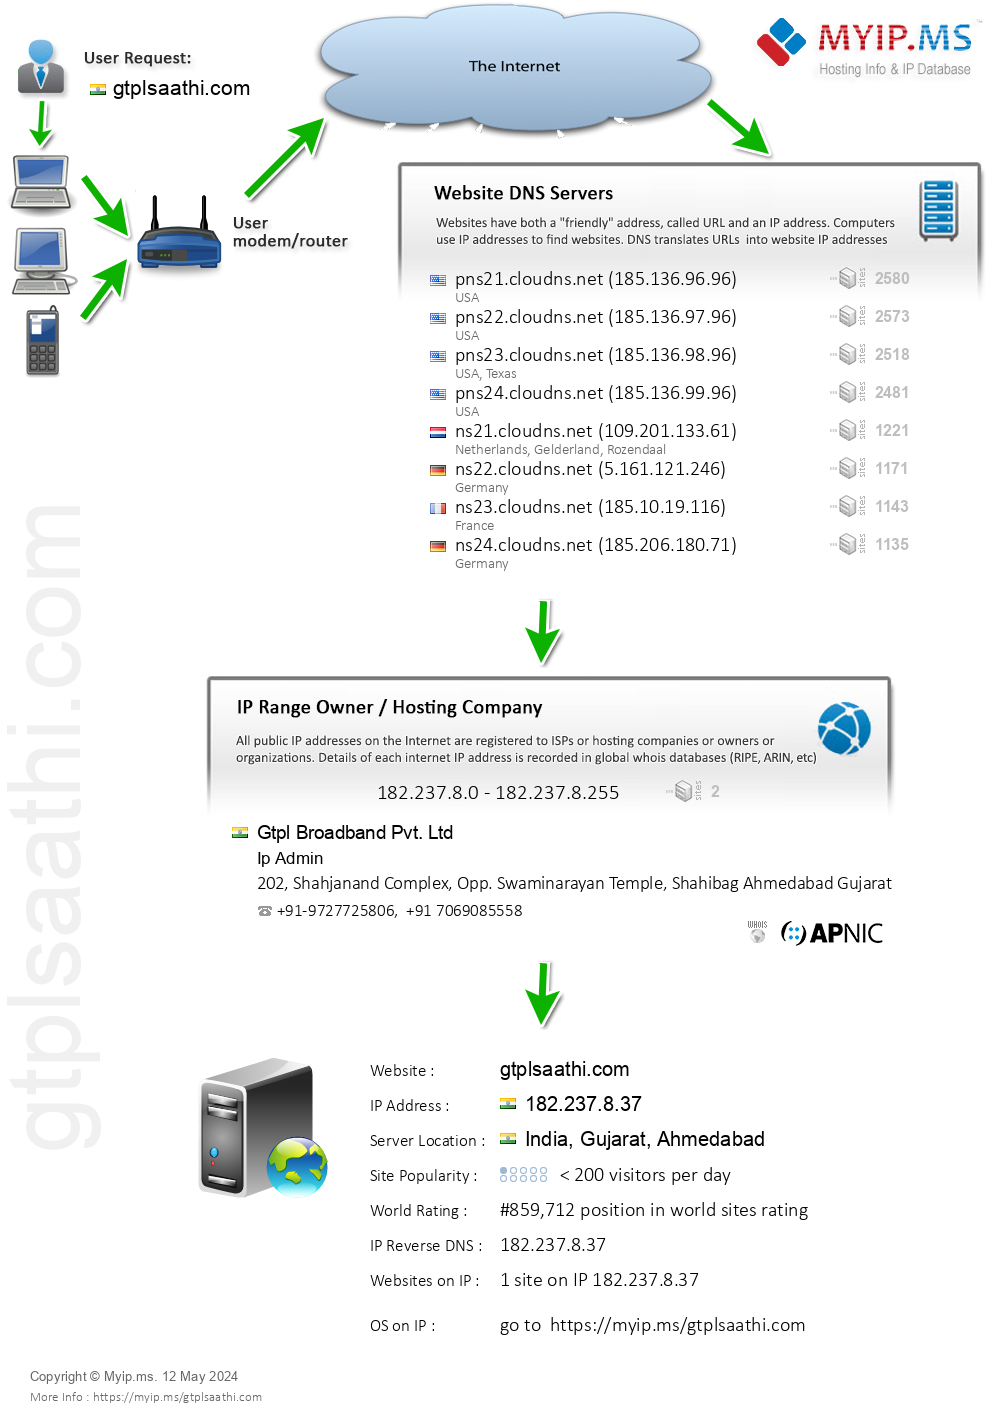 Gtplsaathi.com - Website Hosting Visual IP Diagram